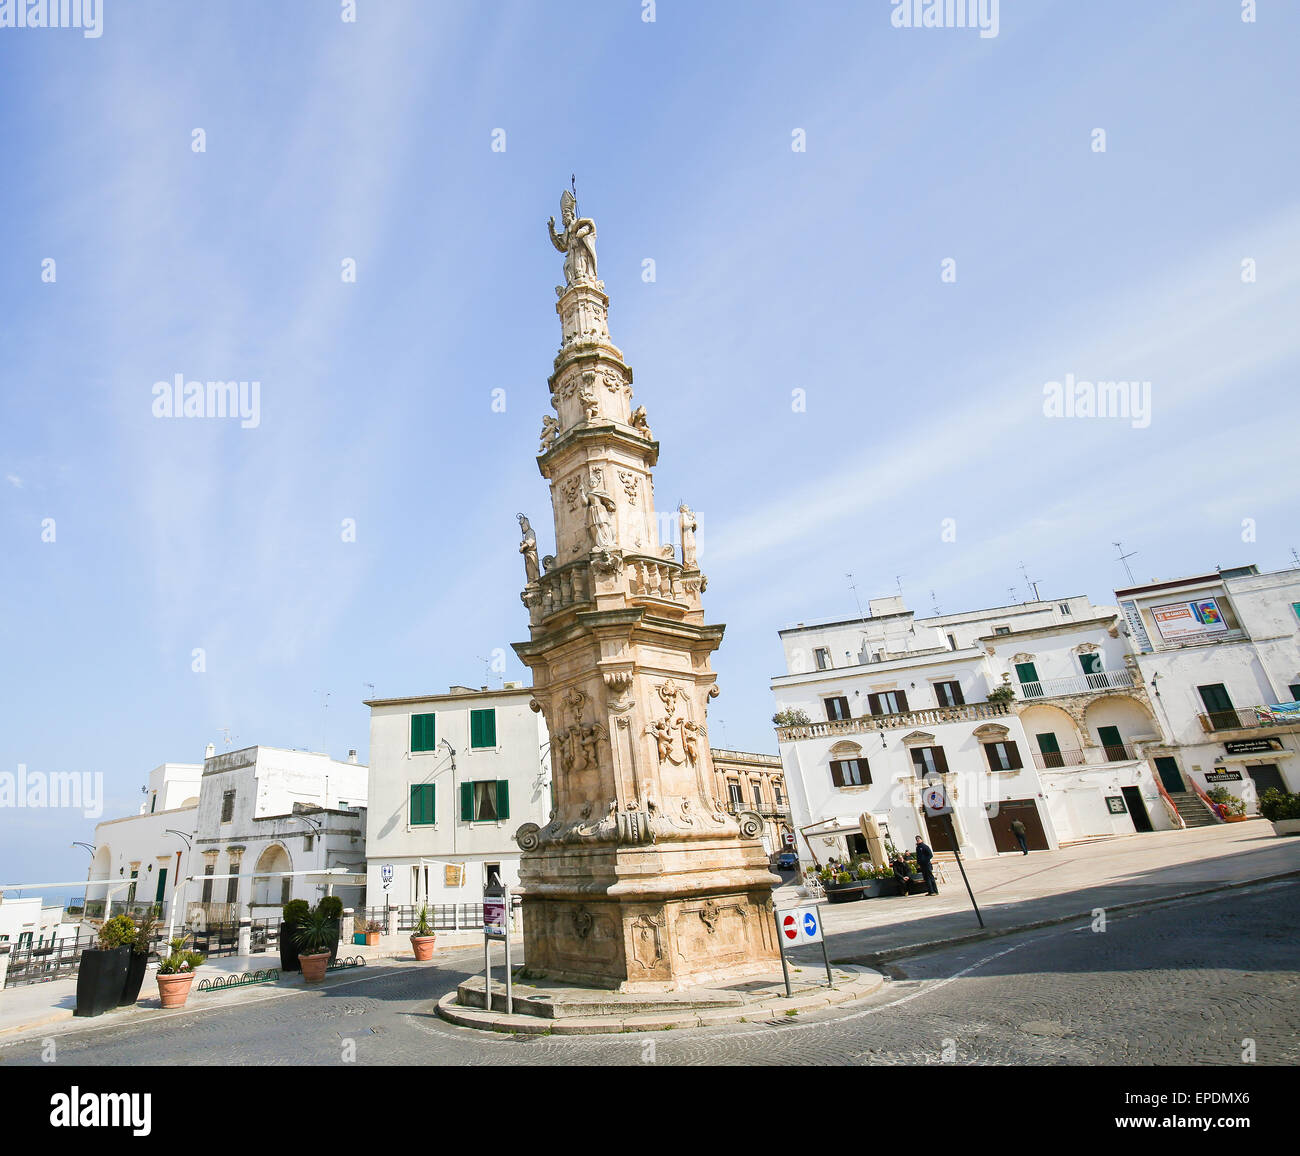 OSTUNI, ITALY - MARCH 14, 2015: Statue of San Oronzo in Ostuni, Puglia, Italy. Stock Photo